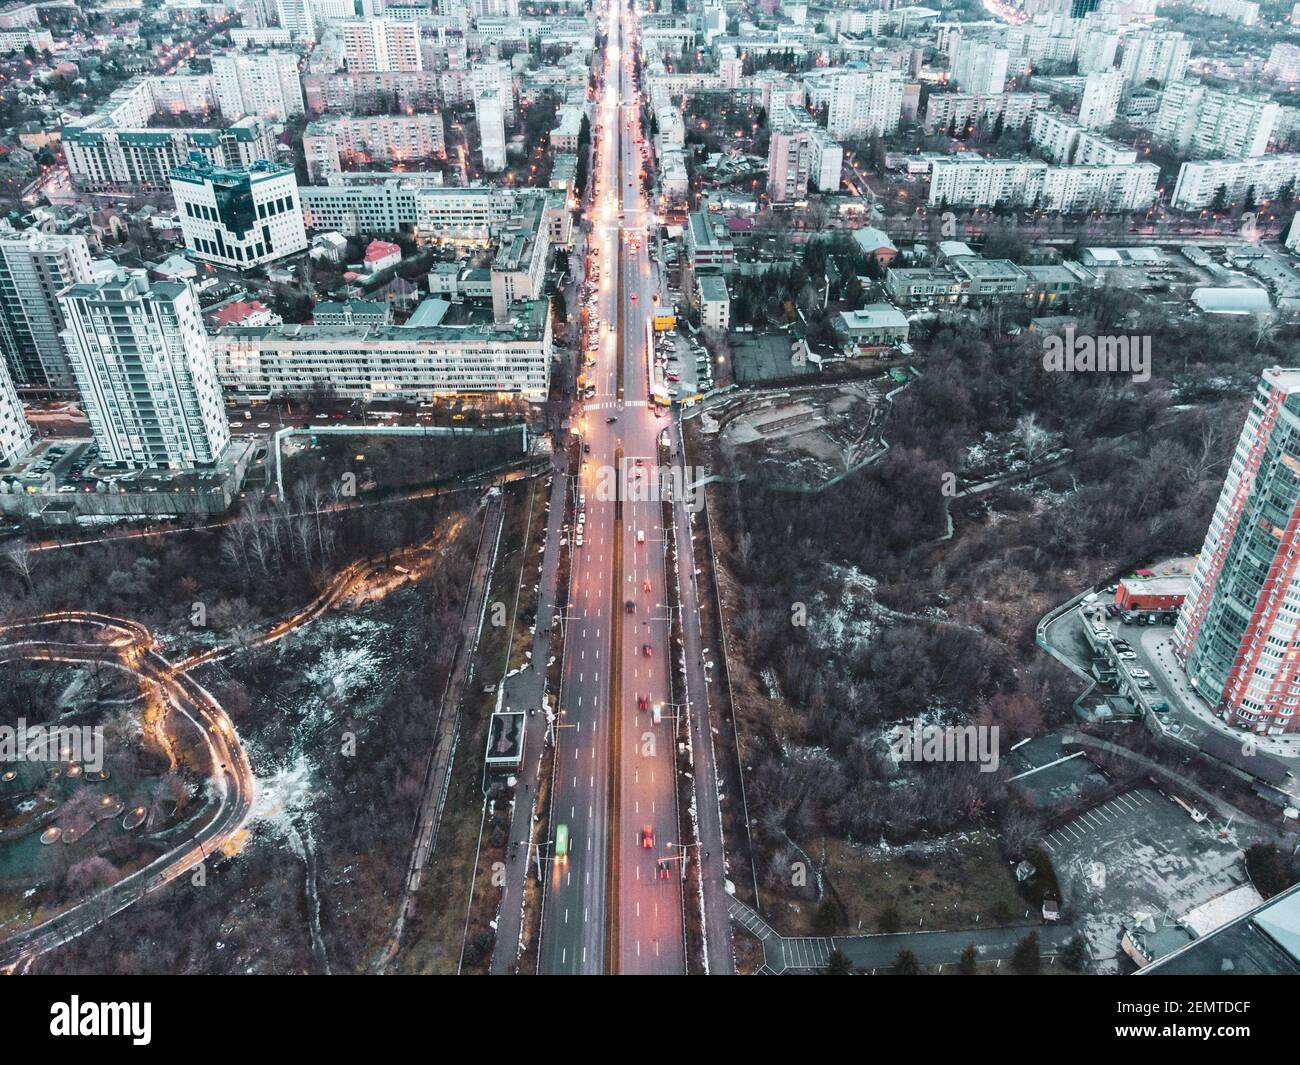 Vista aerea del centro di Kharkiv nauky ave. Giardino botanico Sarzhyn Yar e edifici moderni a più piani in serata. Città grigia d'inverno con strada rossa Foto Stock